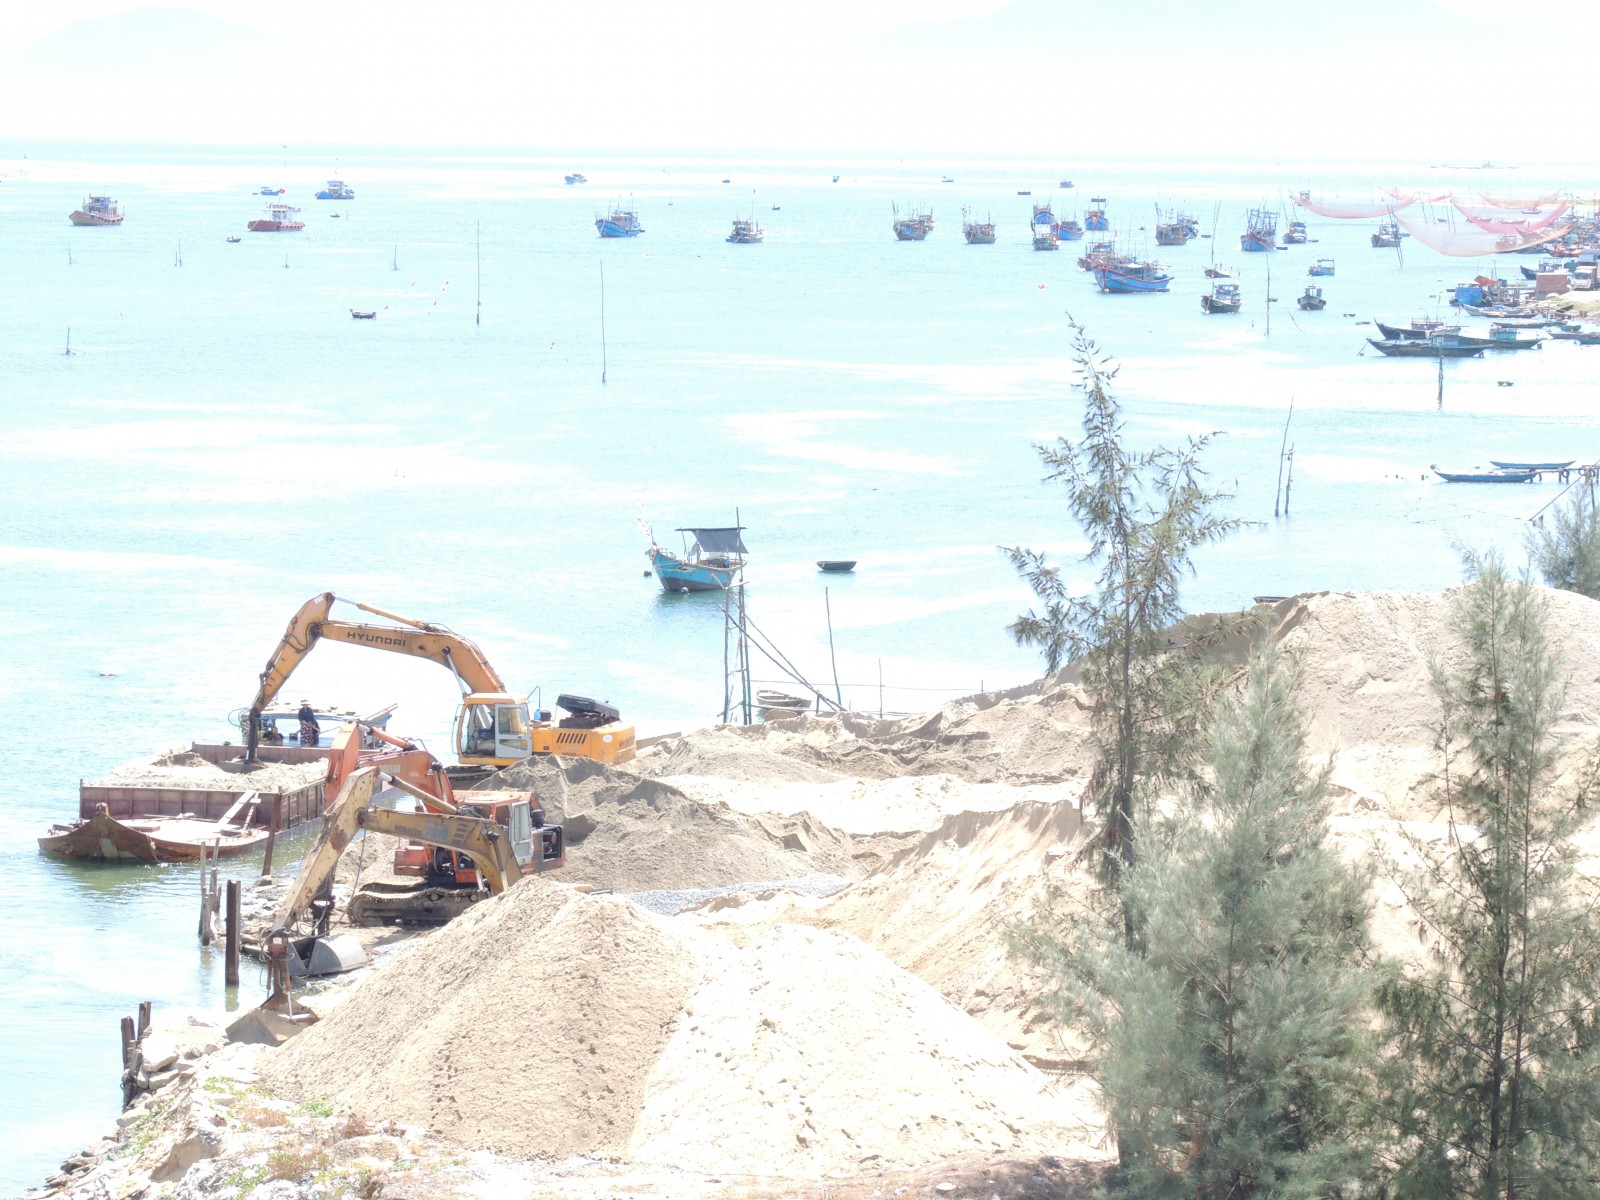 Nhiều chuyên gia lo ngại về “tuổi thọ” của những cây cầu trên sông Vu – Thu Bồn khi tình trạng vừa khai thác cát, vừa chặn kè chống lở 2 bên bờ sông dưới chân cầu Cửa Đại, Quảng Nam.